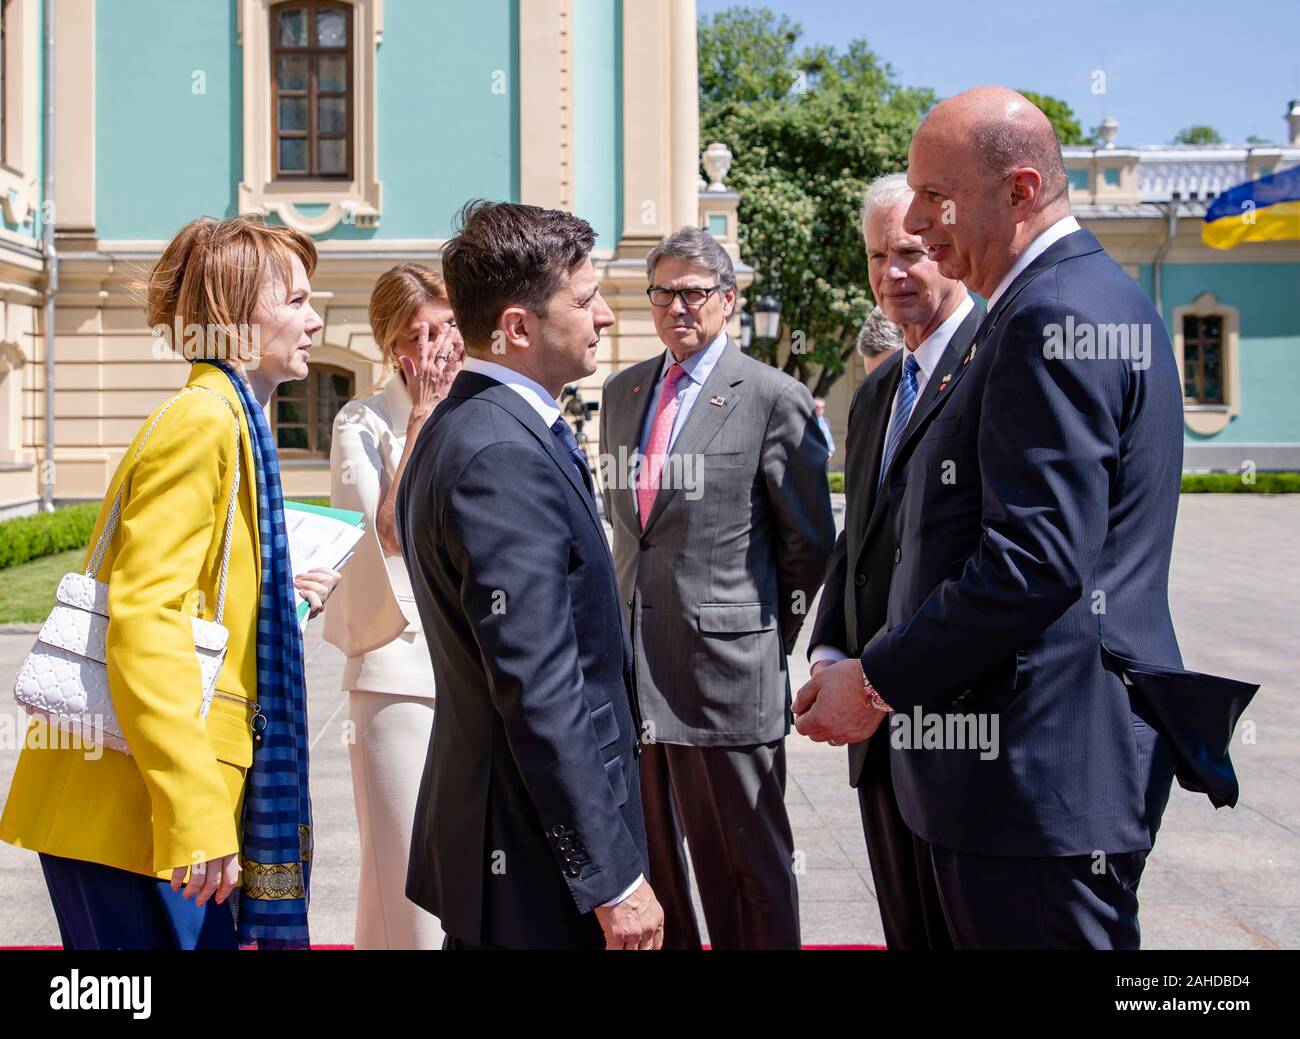 Der Präsident der Ukraine Volodymyr Zelensky, Mitte, schüttelt Hände mit US-Amb. zur Europäischen Union Gordon Sondland, rechts, als US-Energieminister Rick Perry, auf sieht, nach seiner Amtseinführung vor dem Präsidentenpalast - 20. Mai 2019 in Kiew, Ukraine. Stockfoto